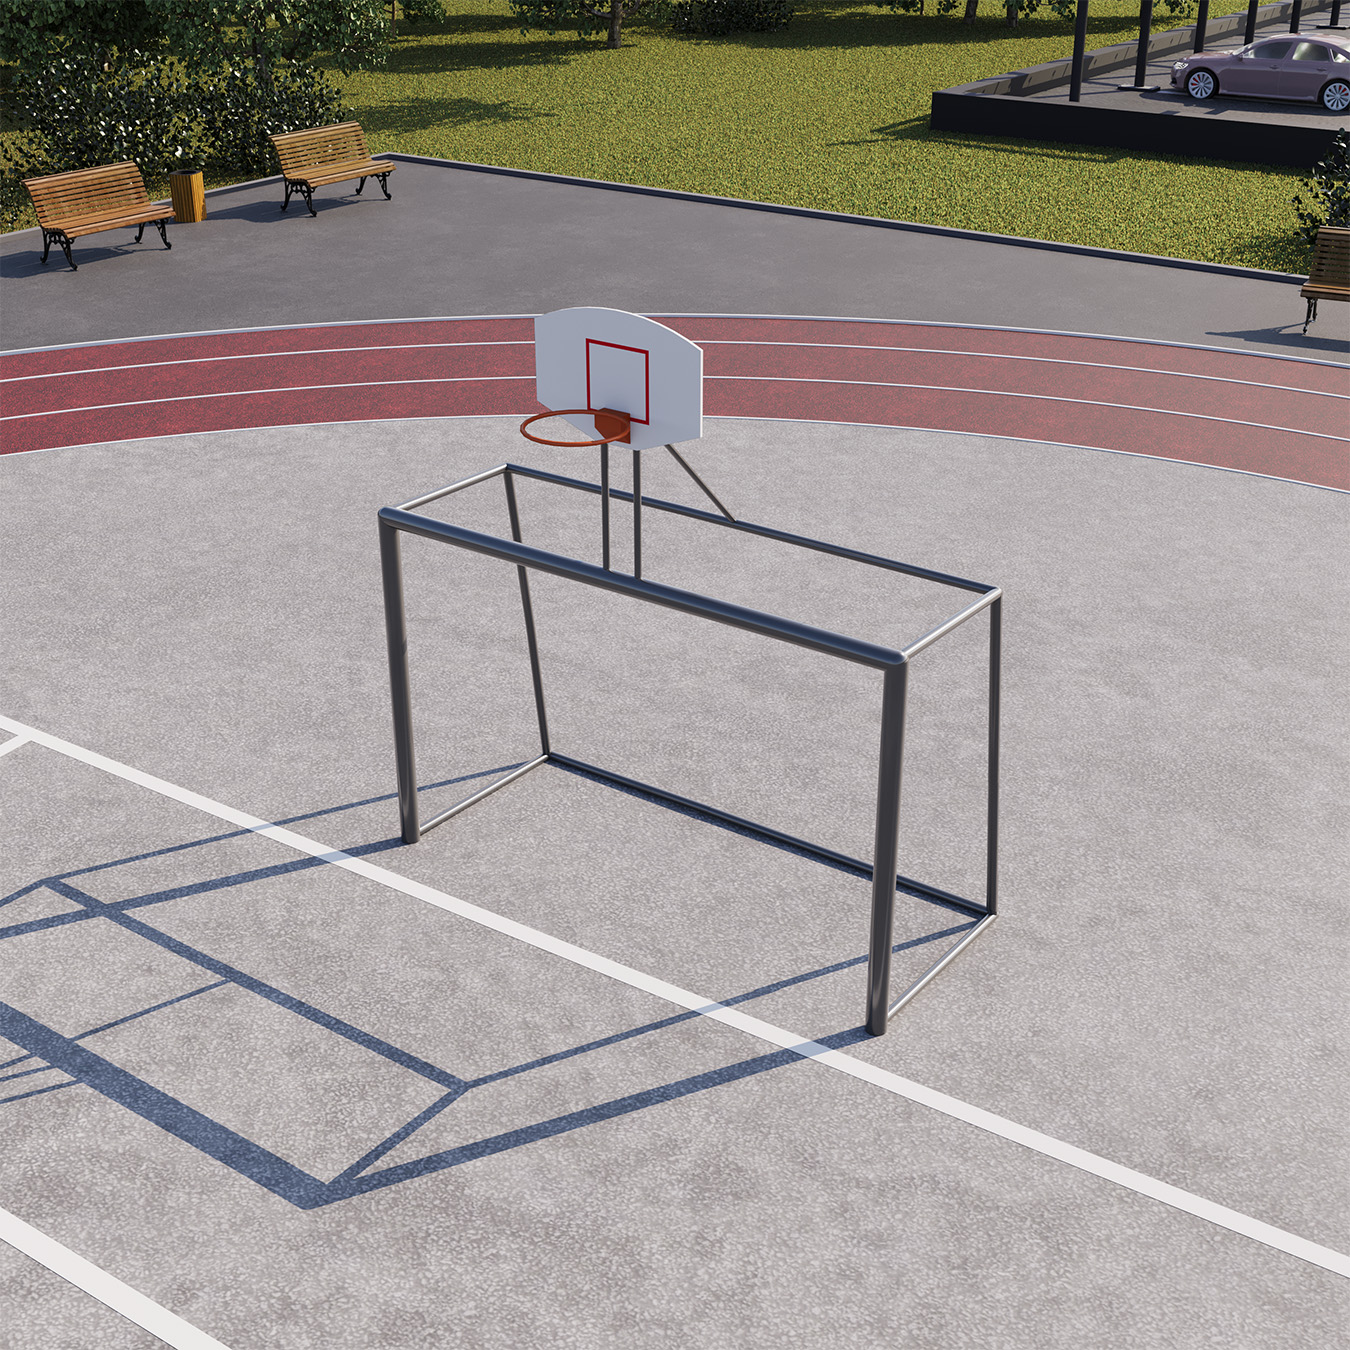 Ворота для минифутбола (гандбола) с баскетбольным щитом СВС-97-1